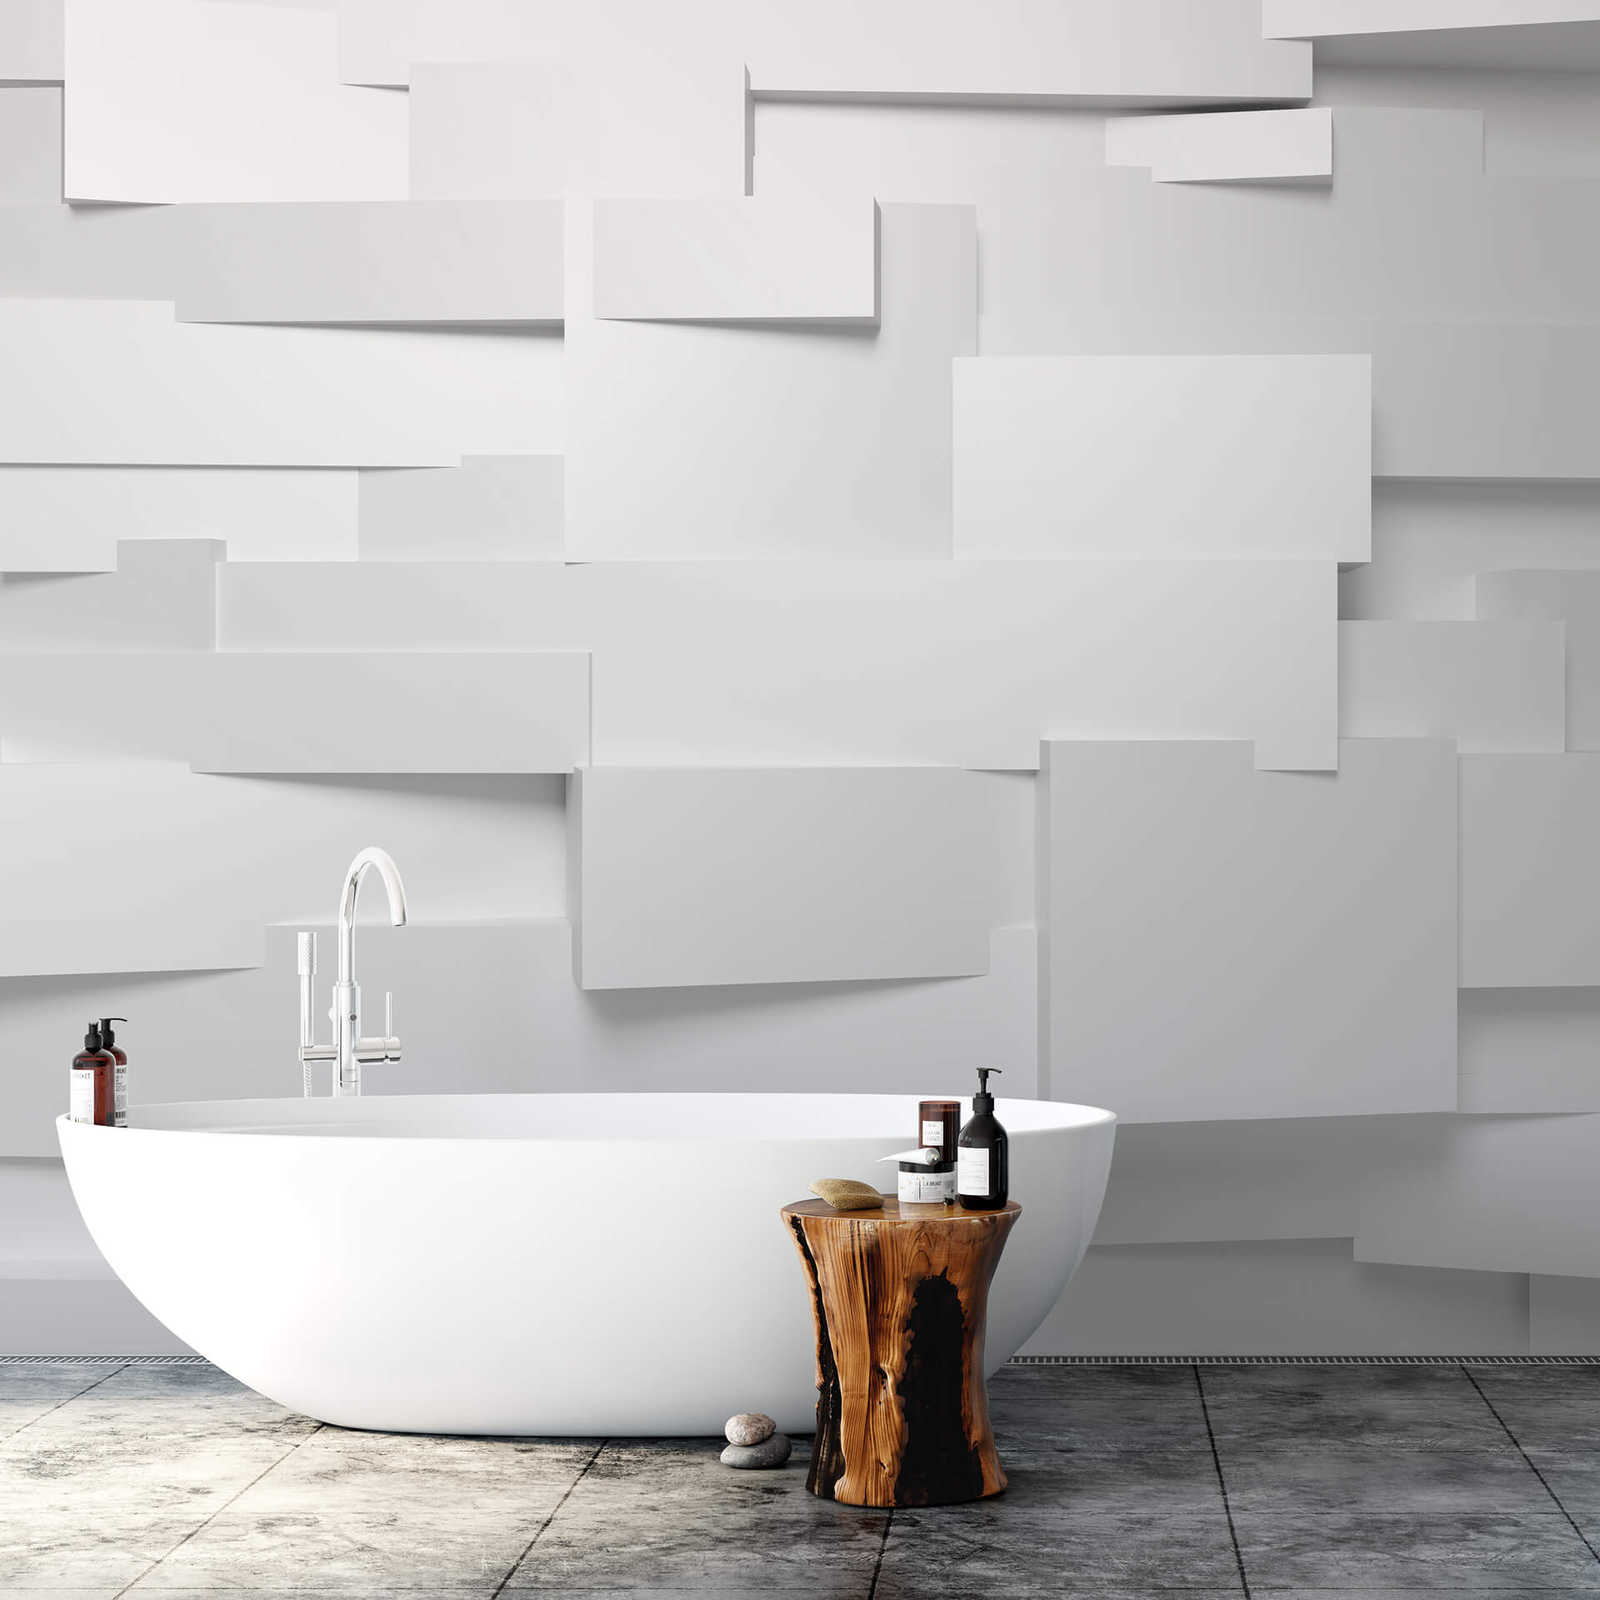             Mural de pared 3D con diseño gráfico moderno - blanco, gris
        